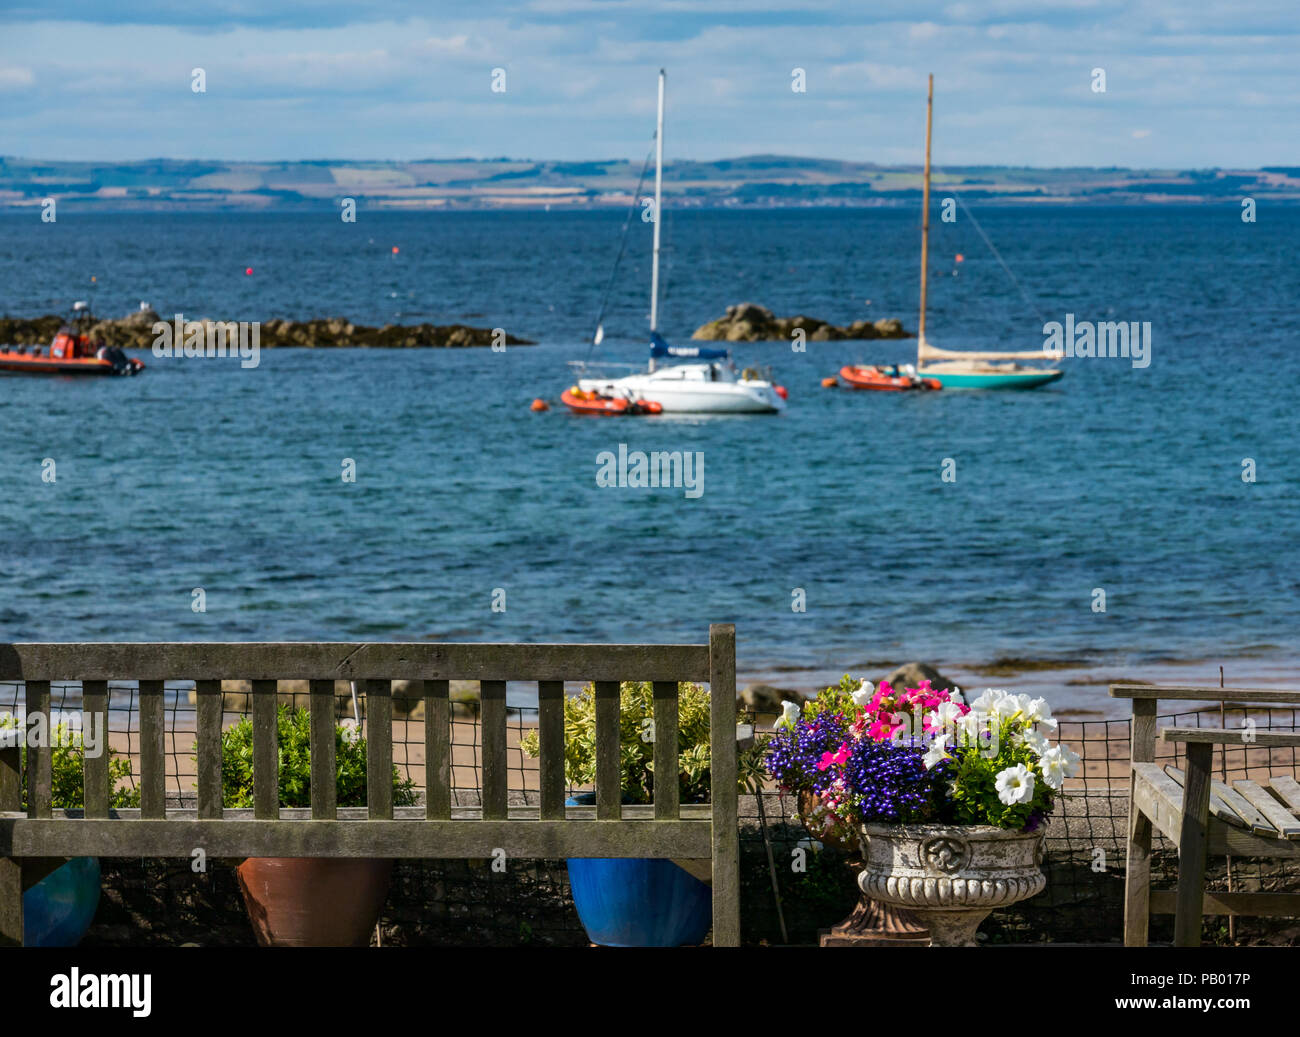 Bunte Blumen und Bänke von Haus am Meer, West Bay Beach mit angelegten Segelboote im Bay, North Berwick, East Lothian, Schottland, Großbritannien Stockfoto